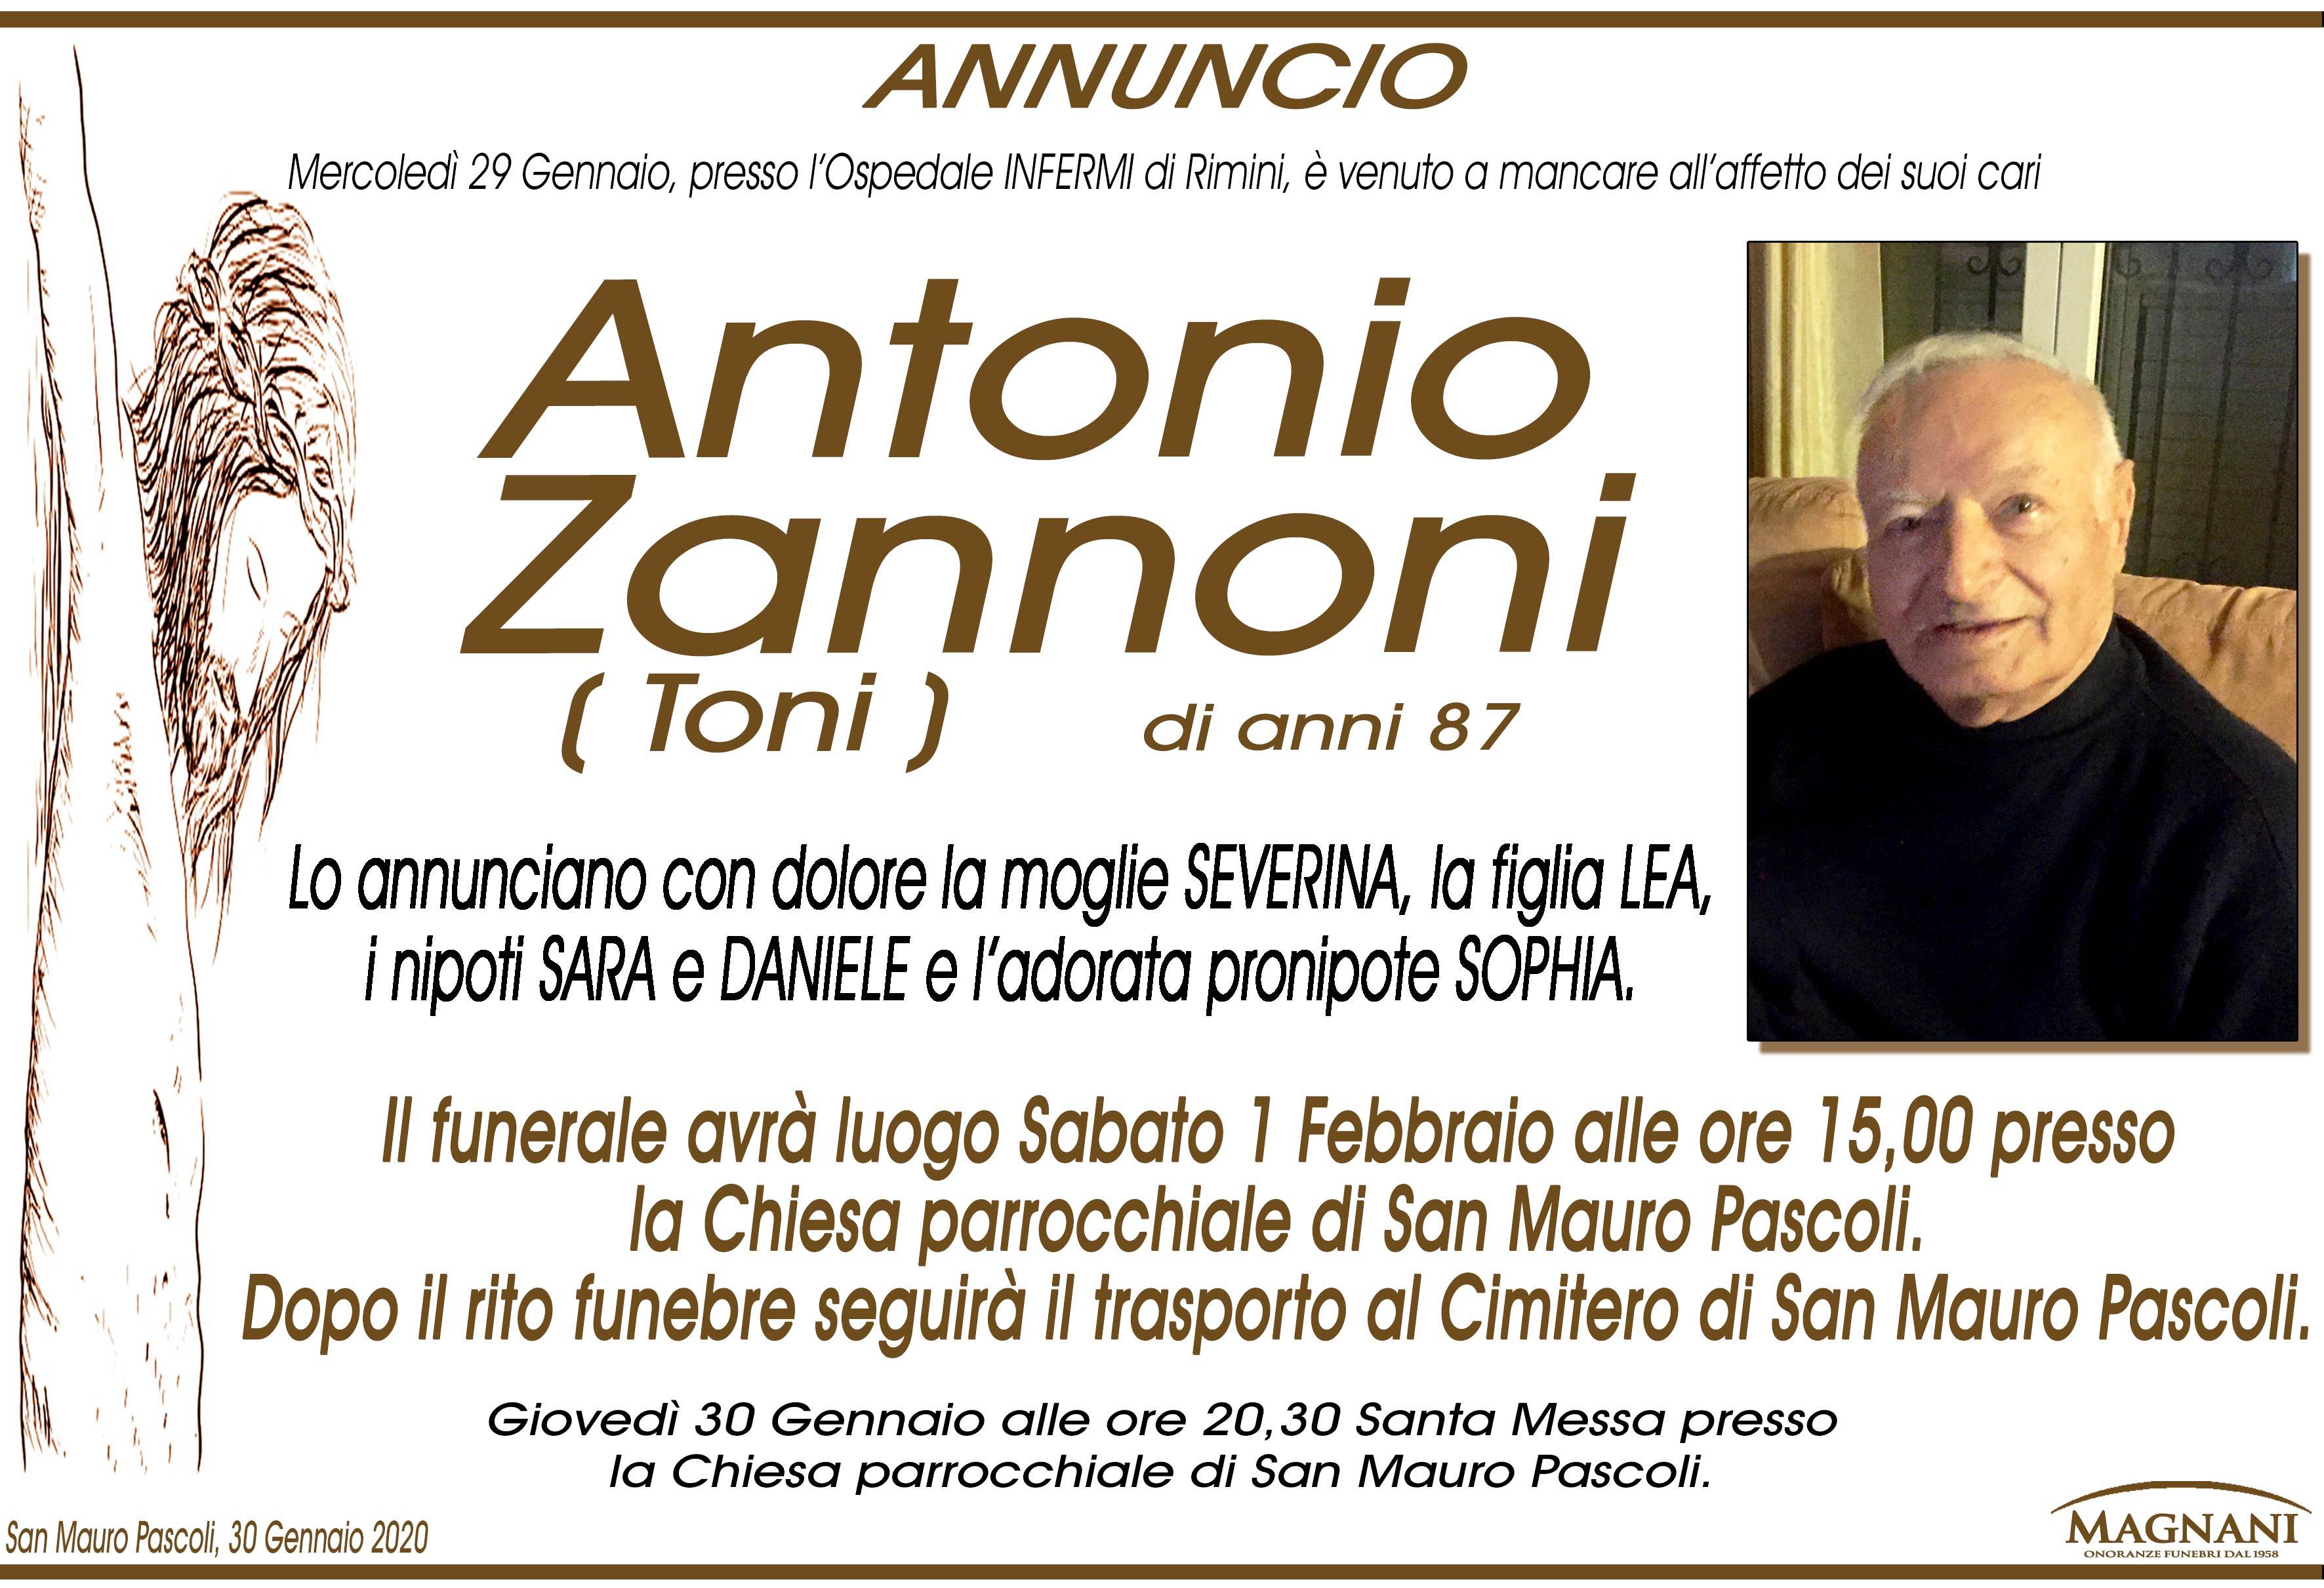 Antonio Zannoni